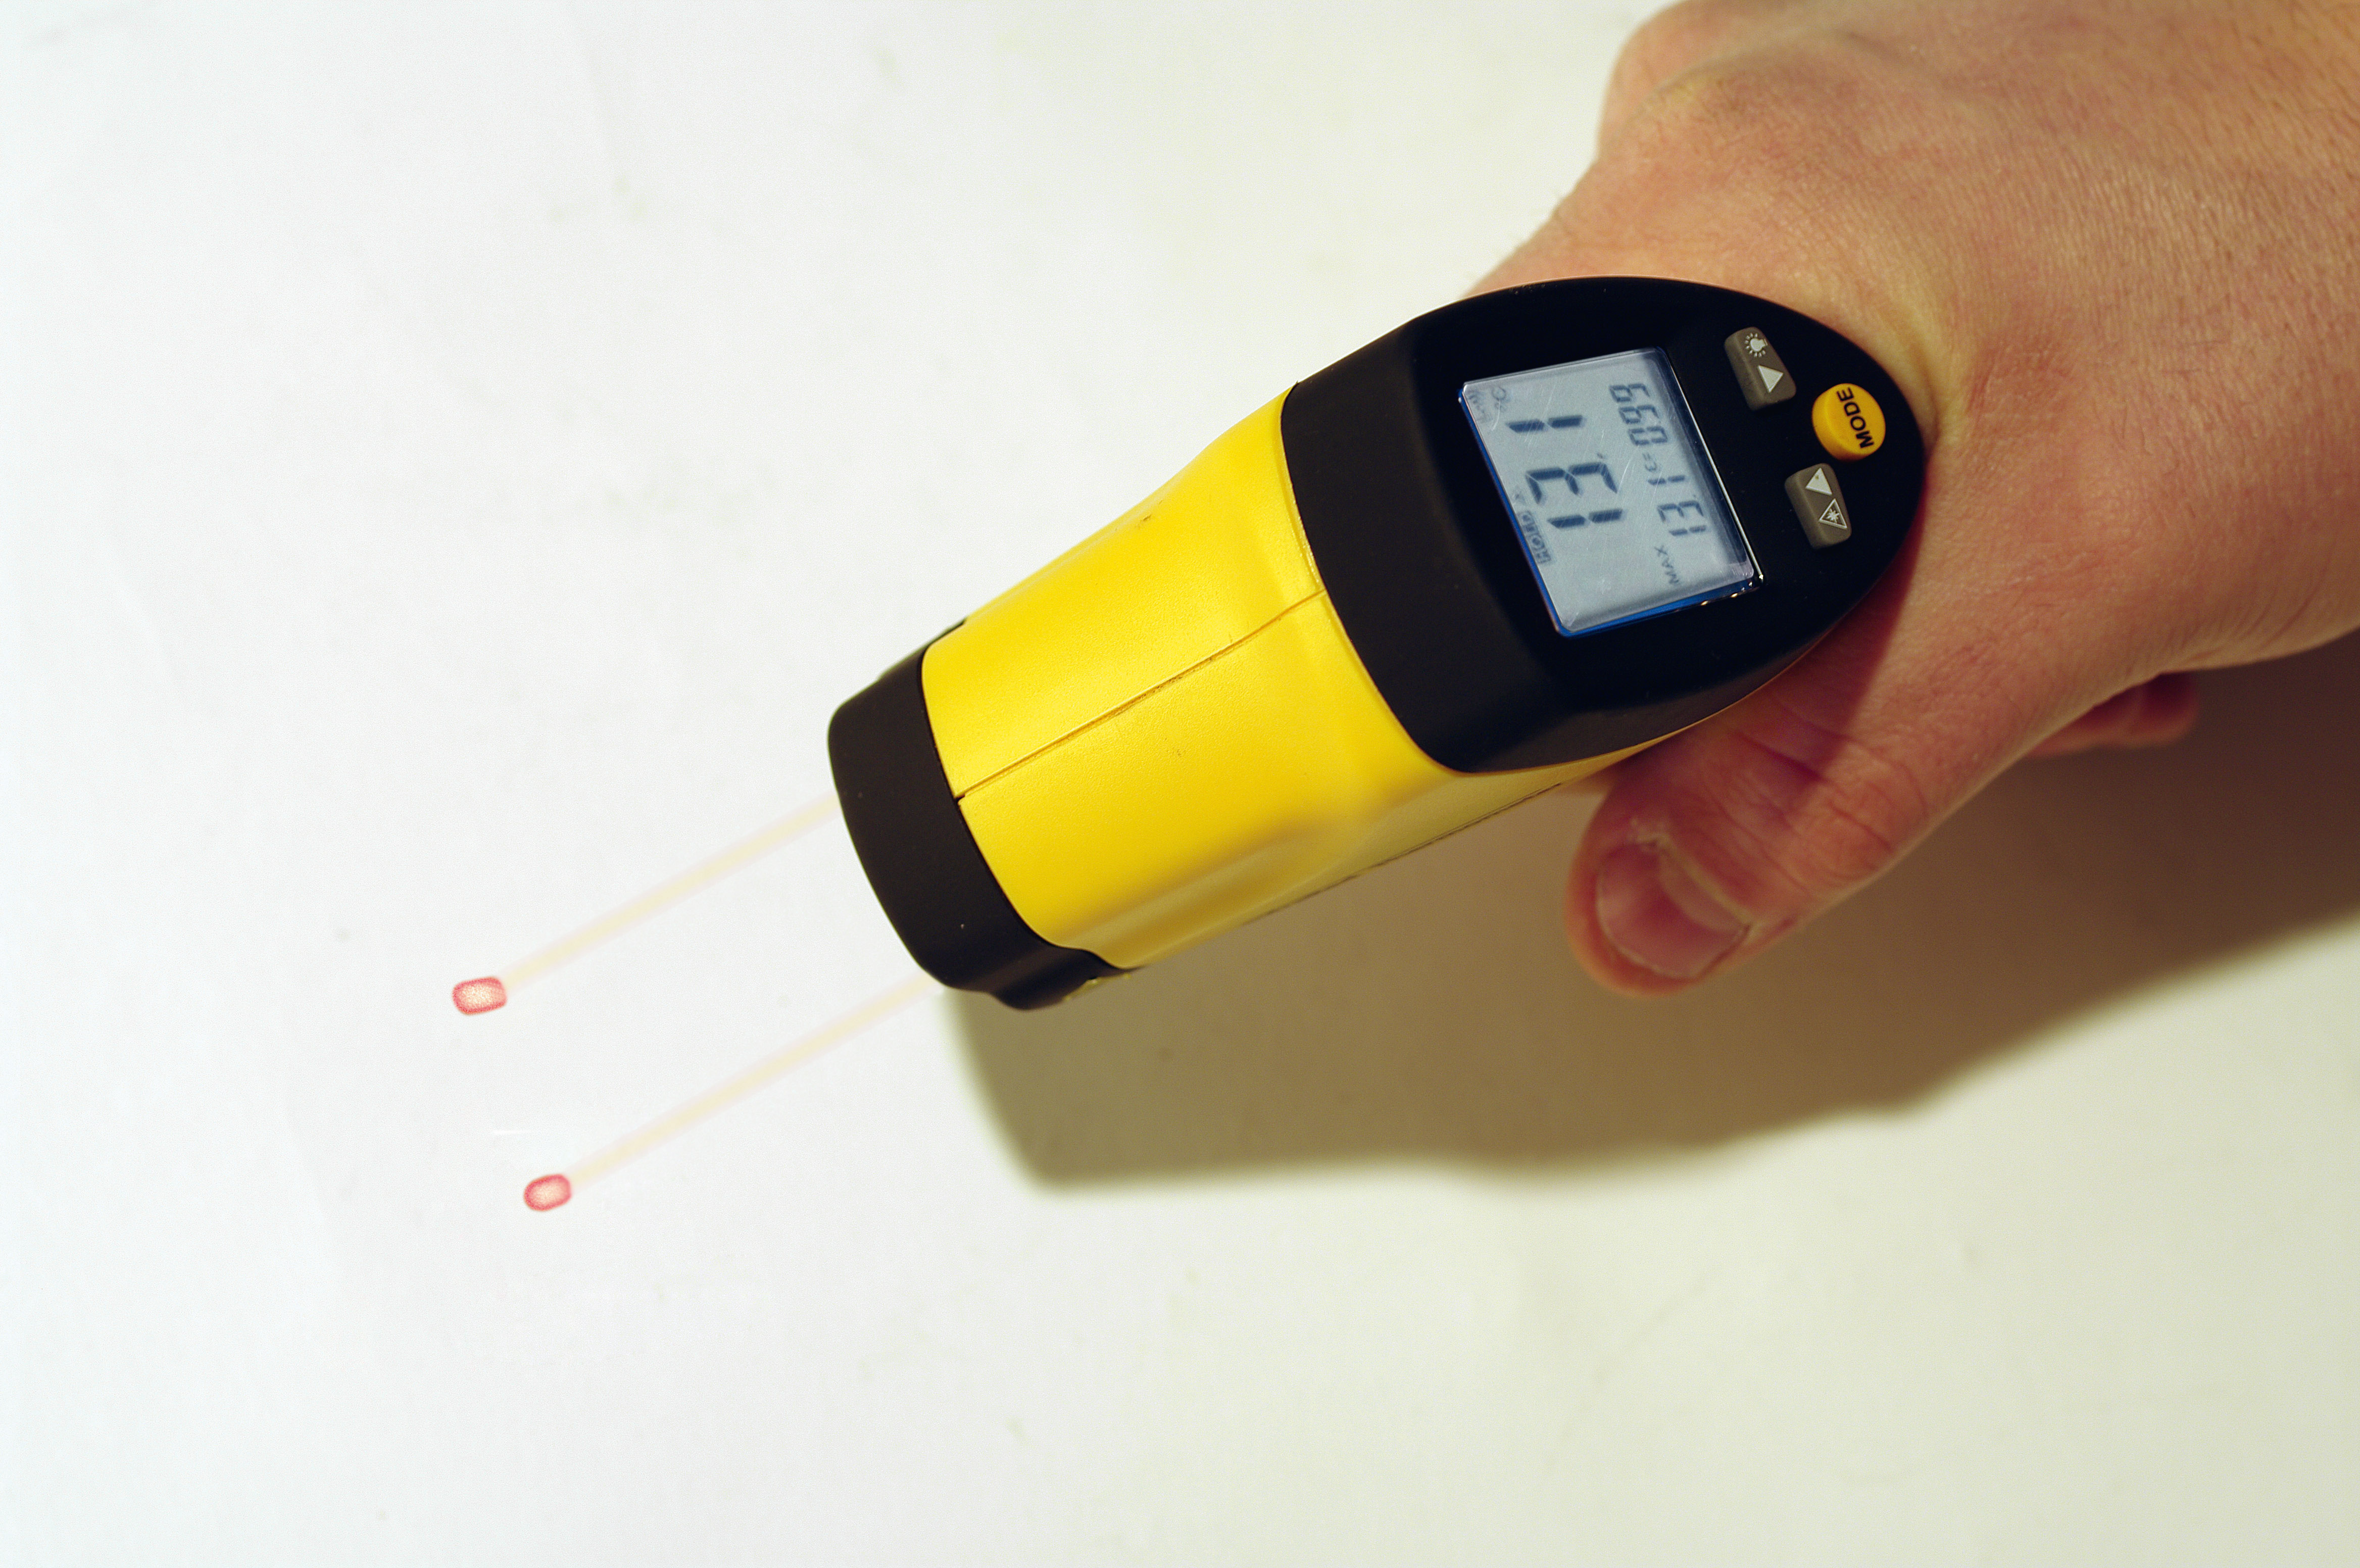 FL-3  Laser-thermometer 1000°c - Kfz-spezifische Werkzeuge